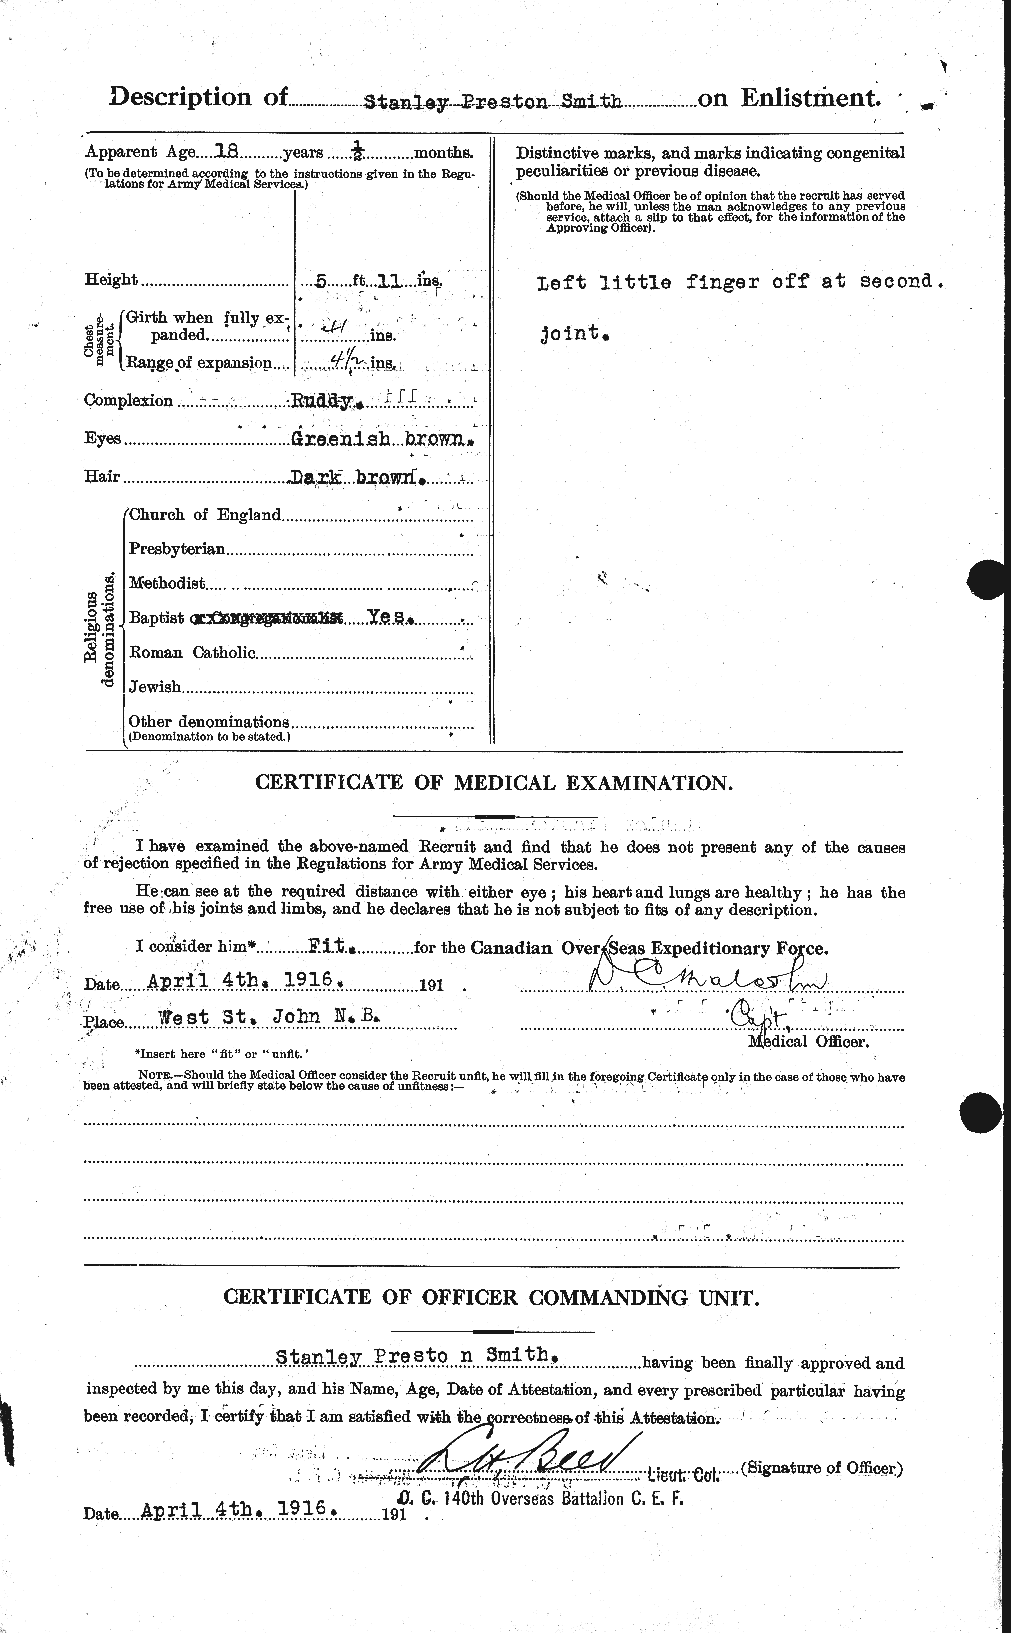 Dossiers du Personnel de la Première Guerre mondiale - CEC 107380b